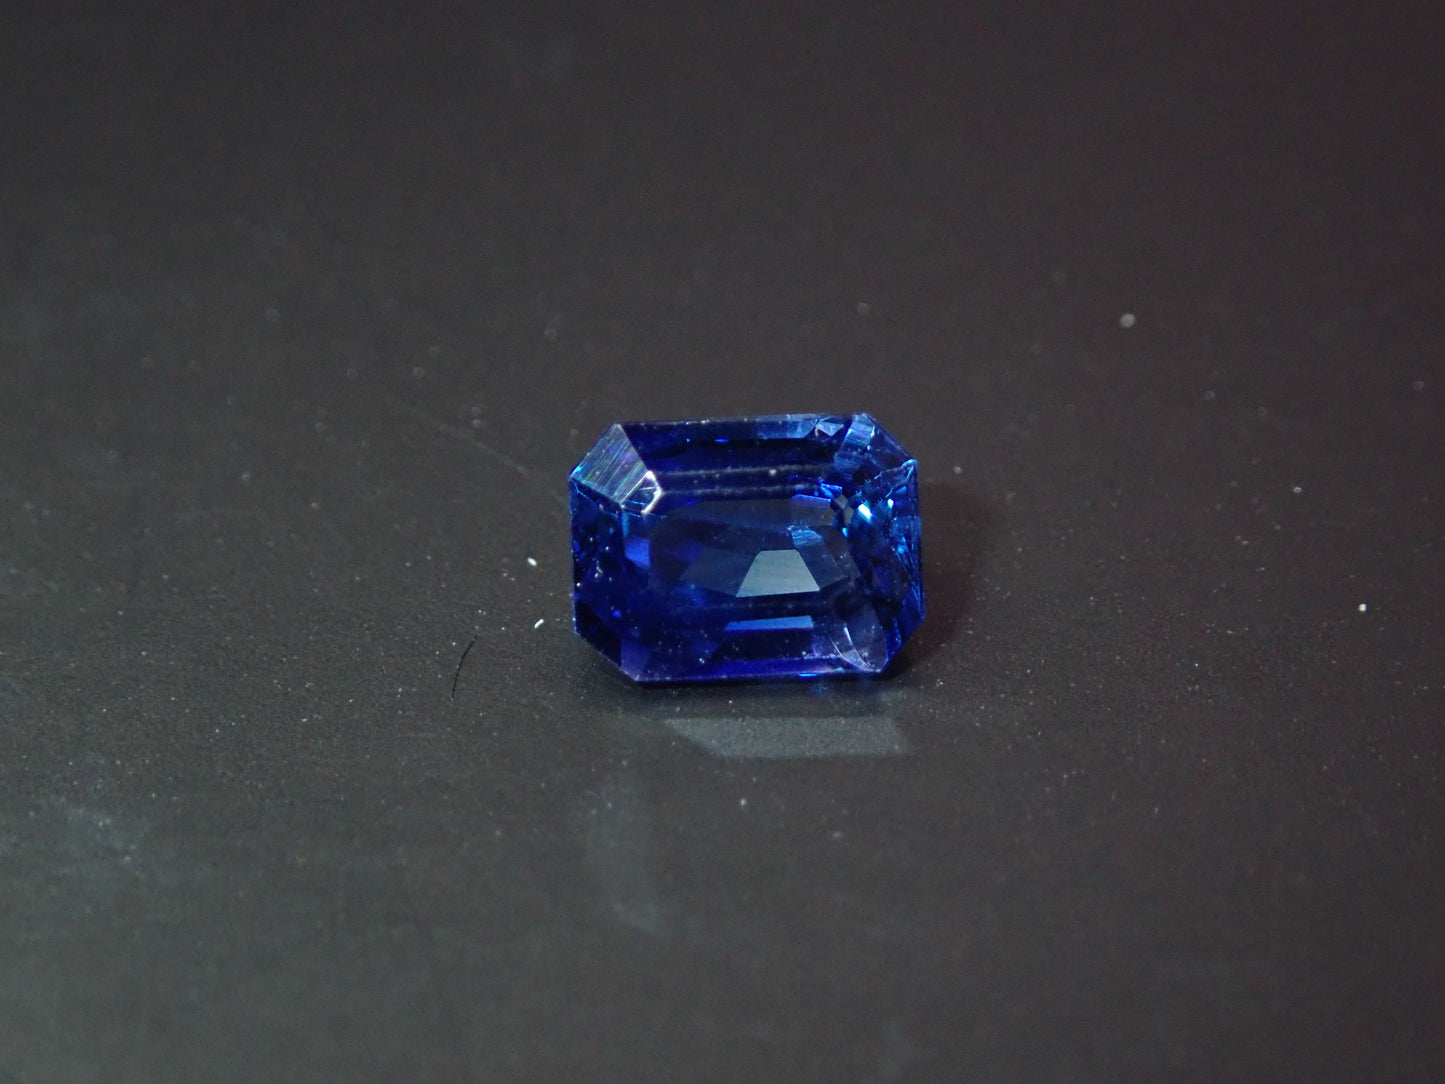 蓝色蓝宝石 0.752 克拉